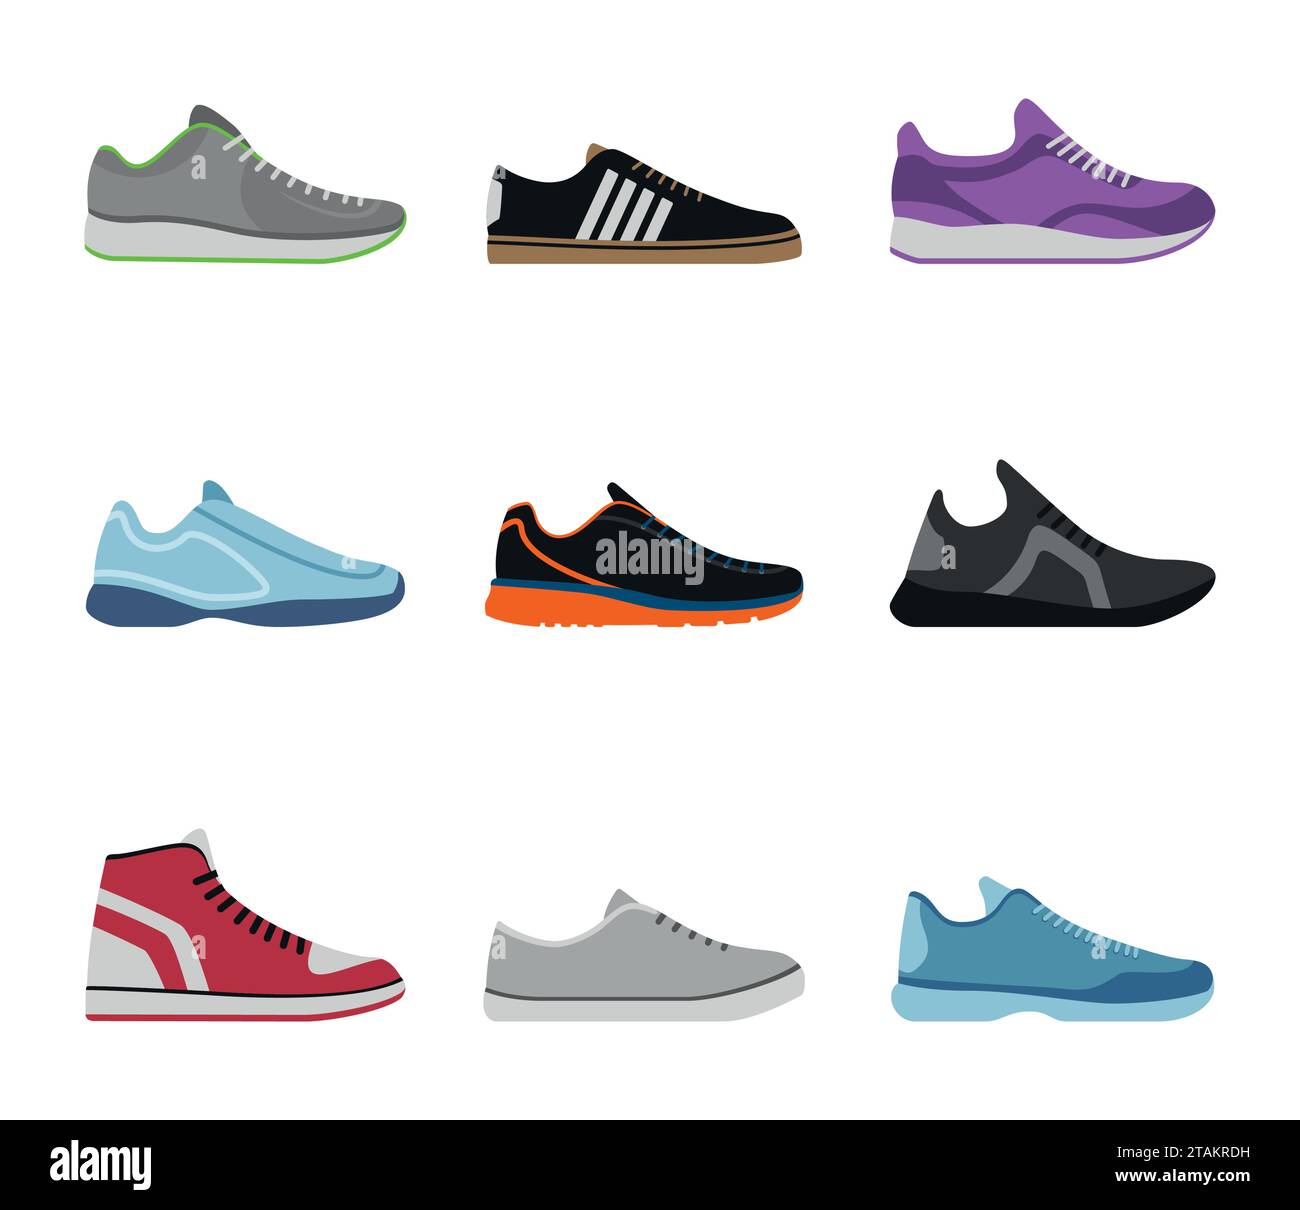 Collezione di scarpe comode isolate su sfondo bianco. Sneakers sportive, abbigliamento per tutti i giorni in stile piatto. Scarpe, scarpe e scarpe alte e basse Illustrazione Vettoriale